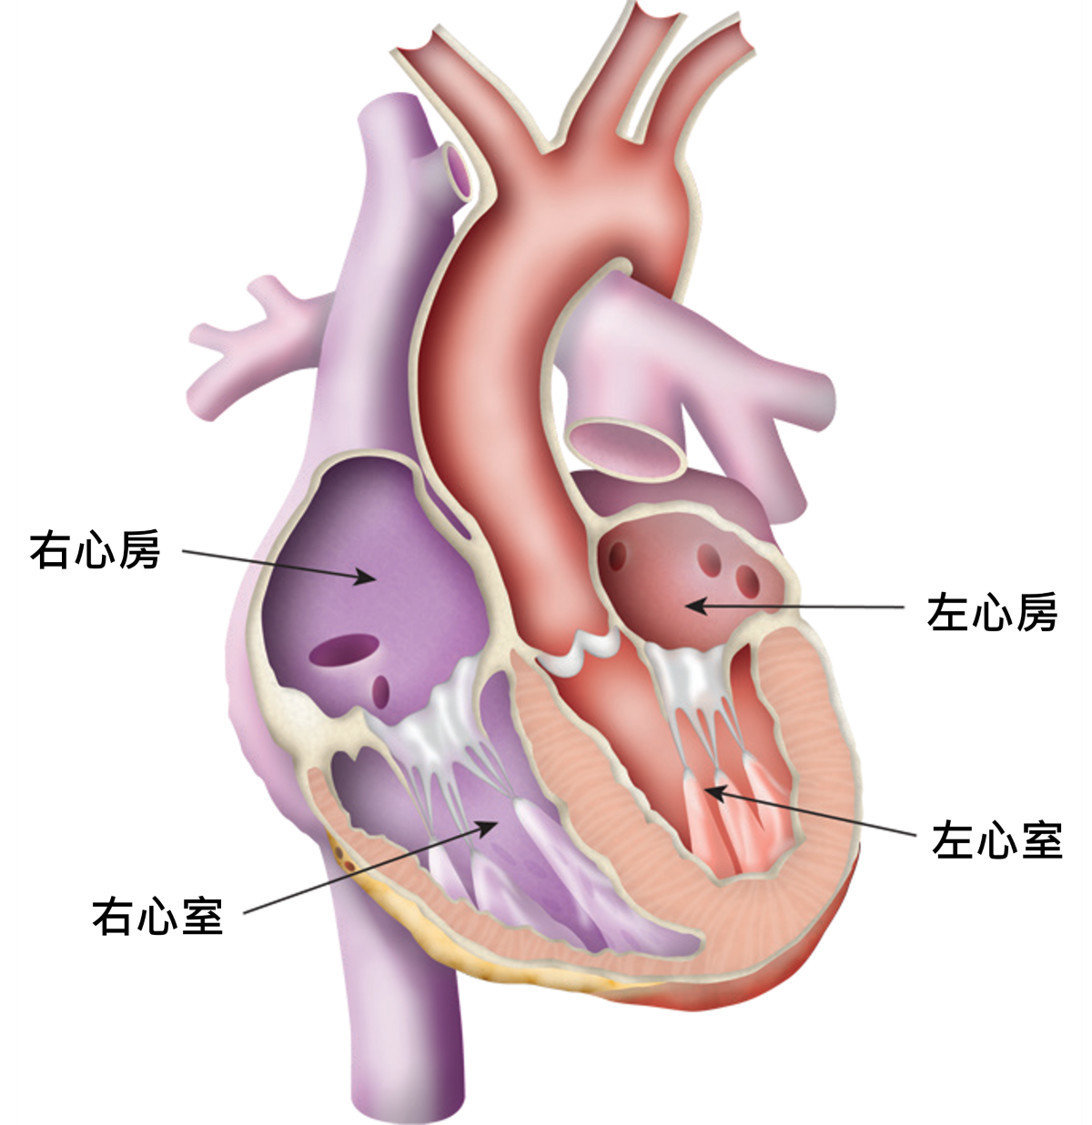 心臟內劃分為四個腔室組成，上方接收血液的腔室稱為「心房」，下方送出血液的腔室稱為「心室」心臟內劃分為四個腔室組成，上方接收血液的腔室稱為「心房」，下方送出血液的腔室稱為「心室」